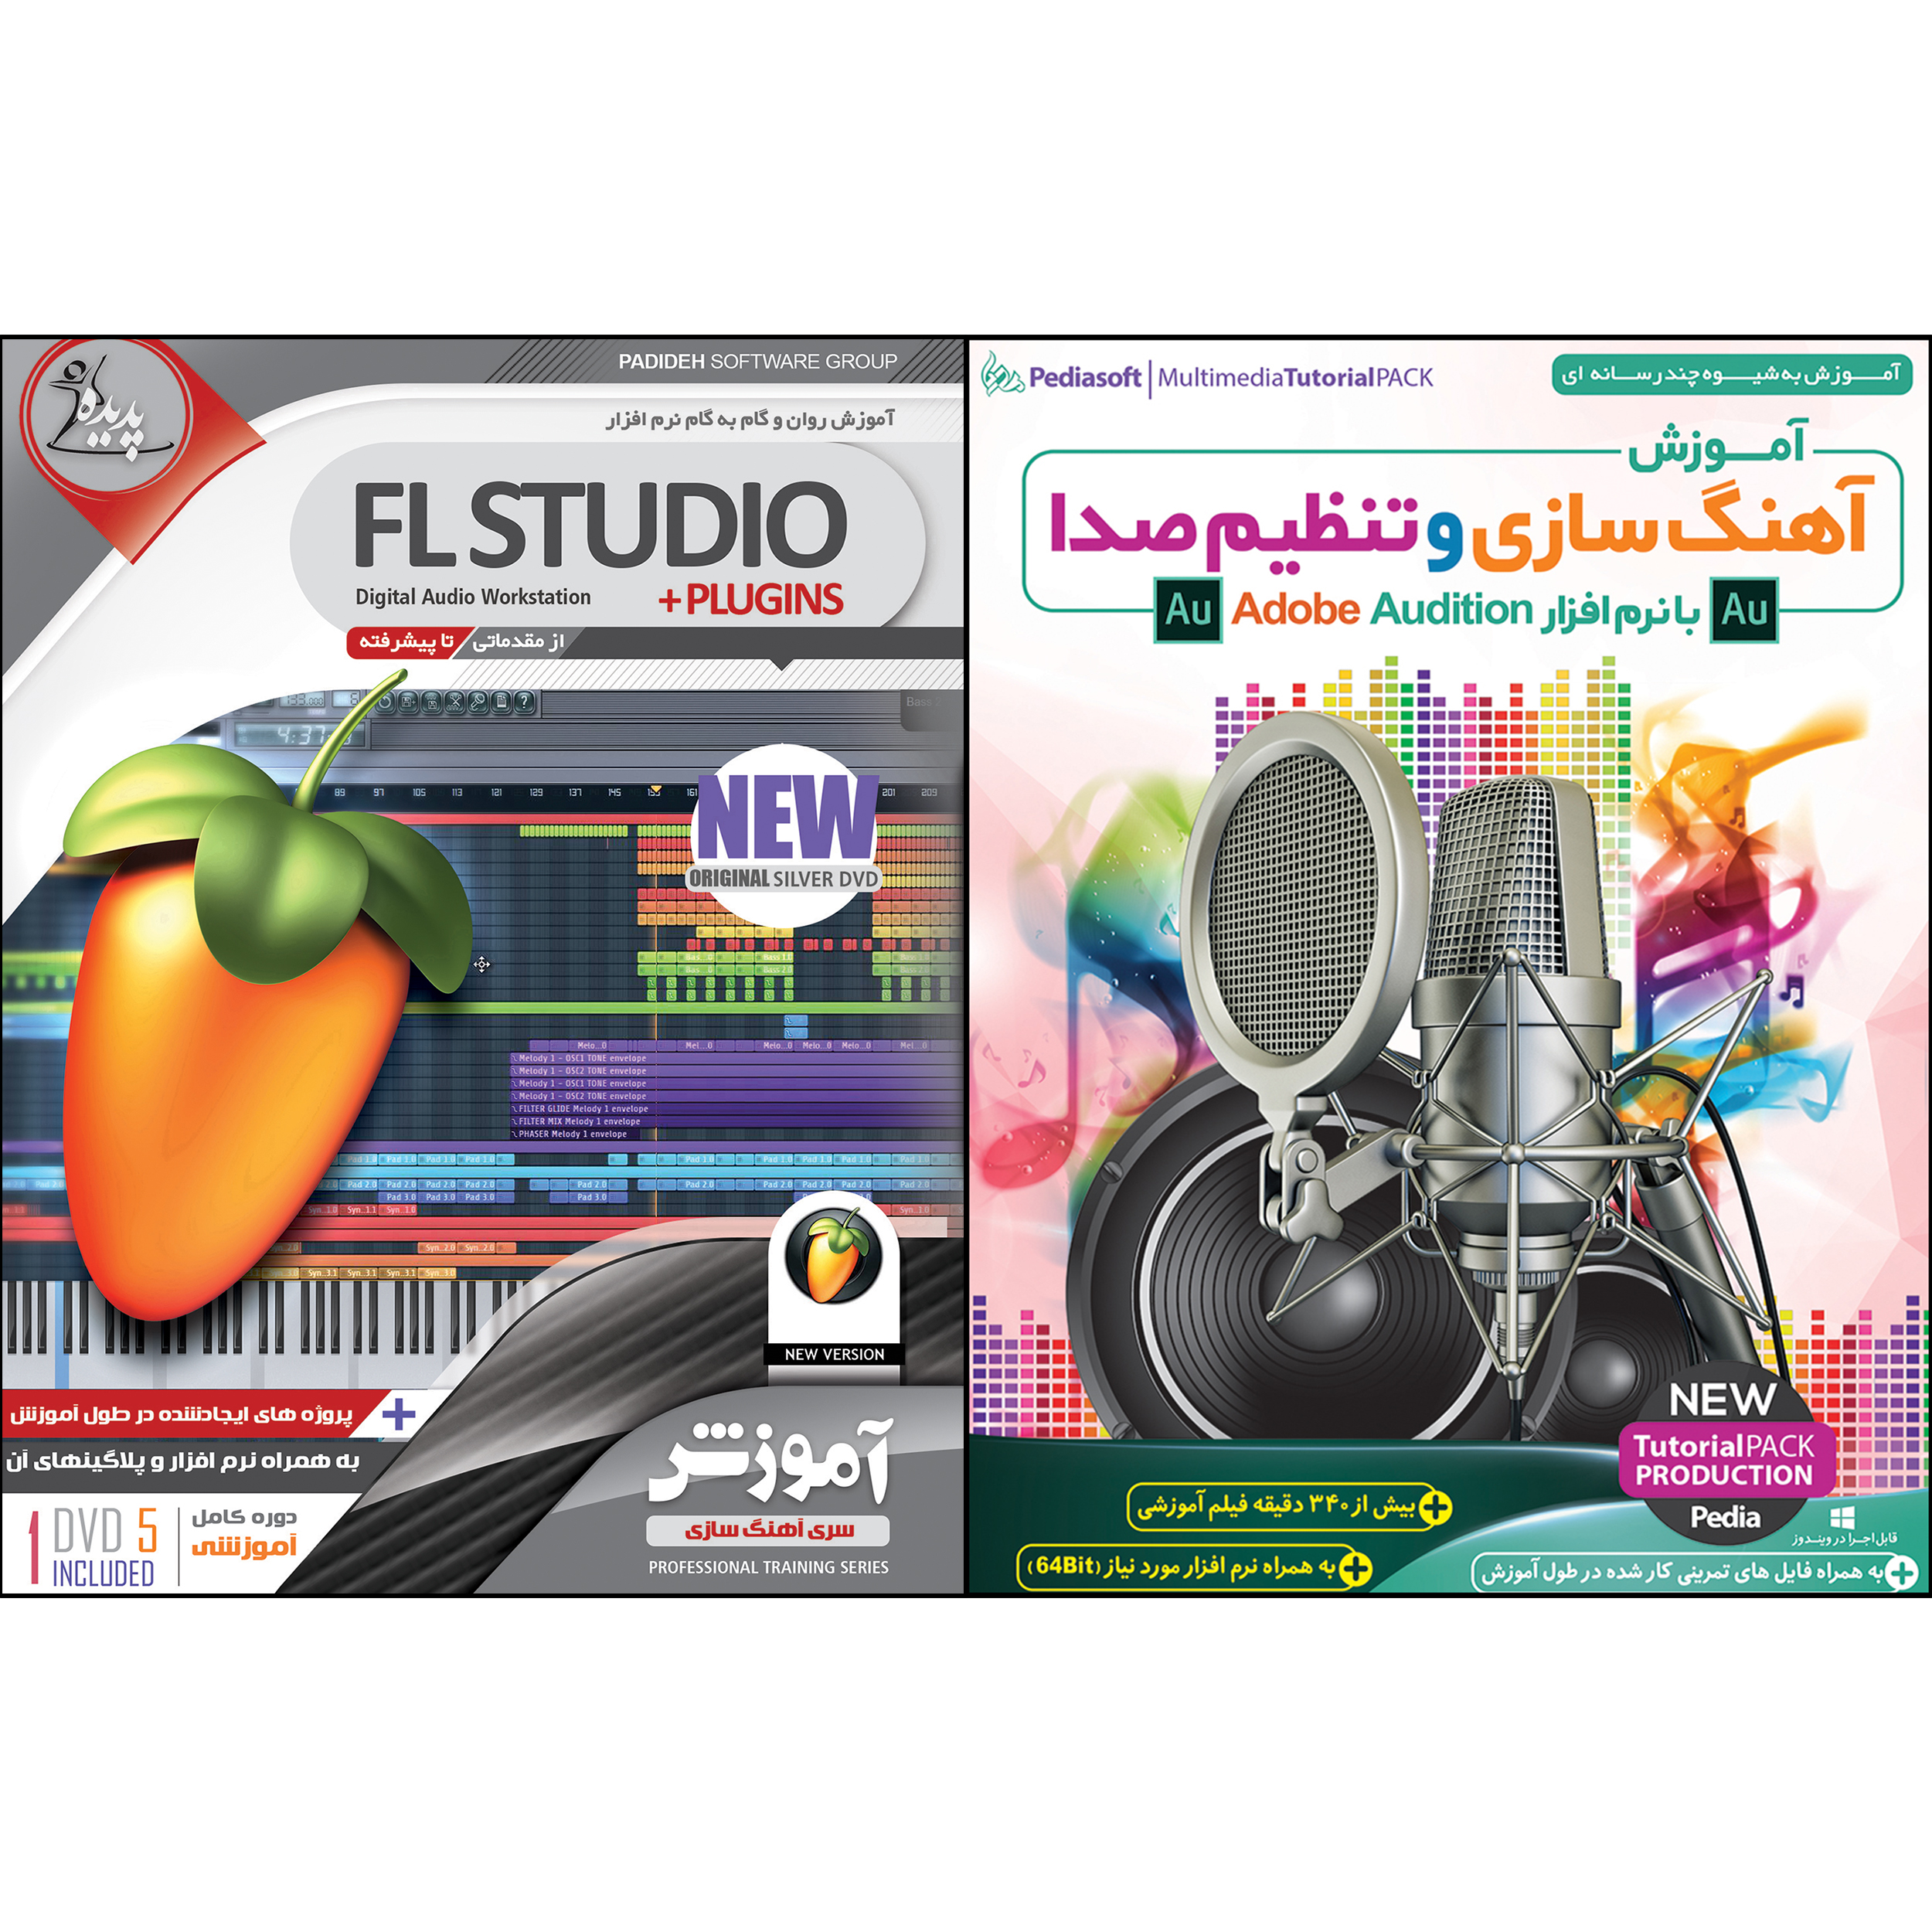 نرم افزار آموزش آهنگ سازی و تنظیم صدا با نرم افزار Adobe Audition نشر پدیا سافت به همراه نرم افزار آموزش FL STUDIO نشر پدیده